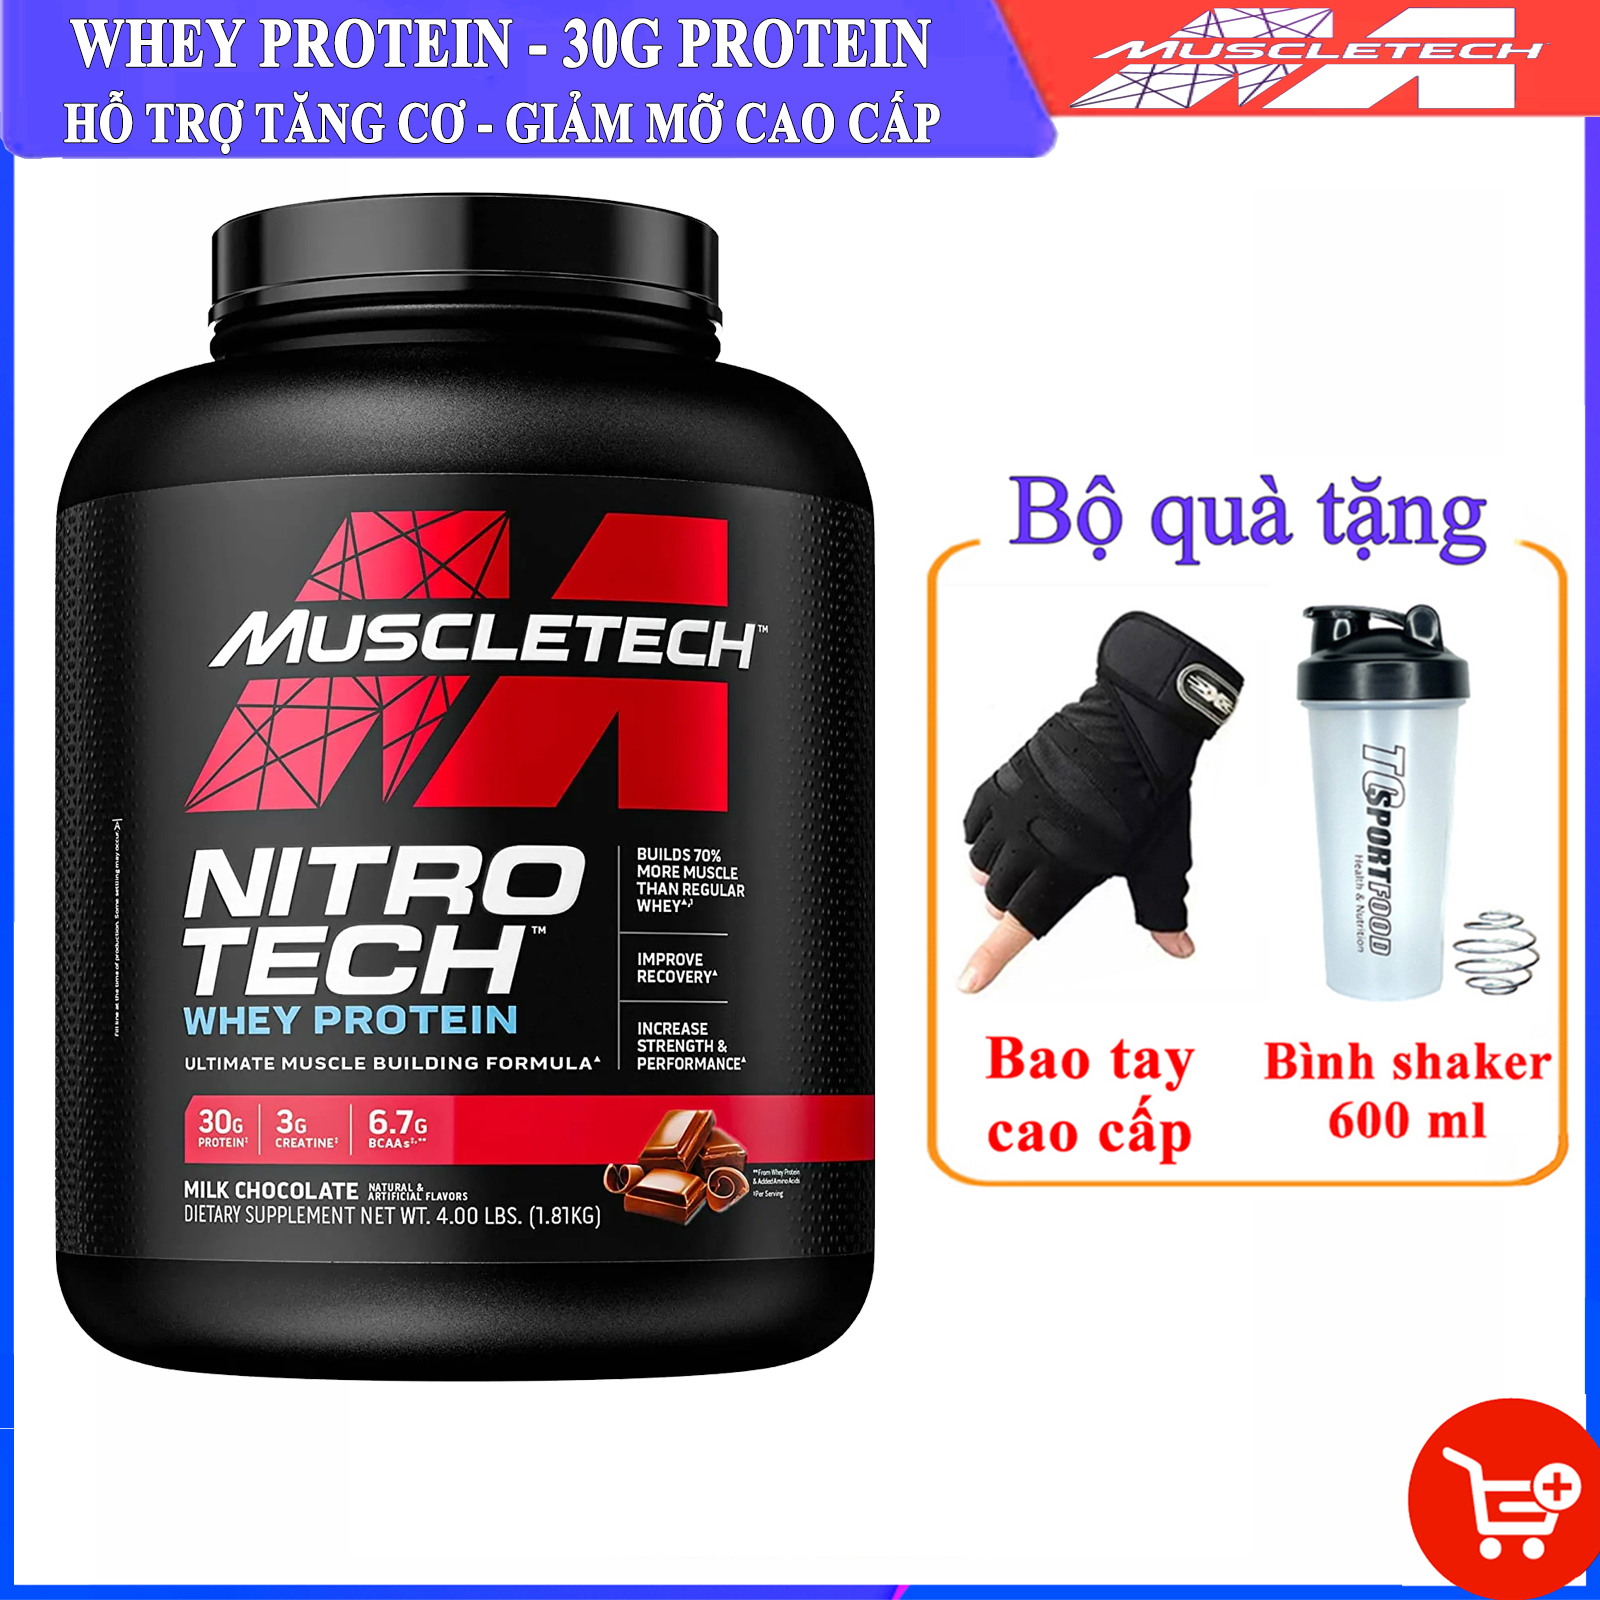 [TẶNG BAO TAY VÀ BÌNH] Sữa tăng cơ cao cấp Whey Protein Nitro Tech của MuscleTech hộp 1.8 kg hỗ trợ tăng cơ giảm cân đốt mỡ tăng sức bền sức mạnh vượt trội cho người tập gym và chơi thể thao thumbnail